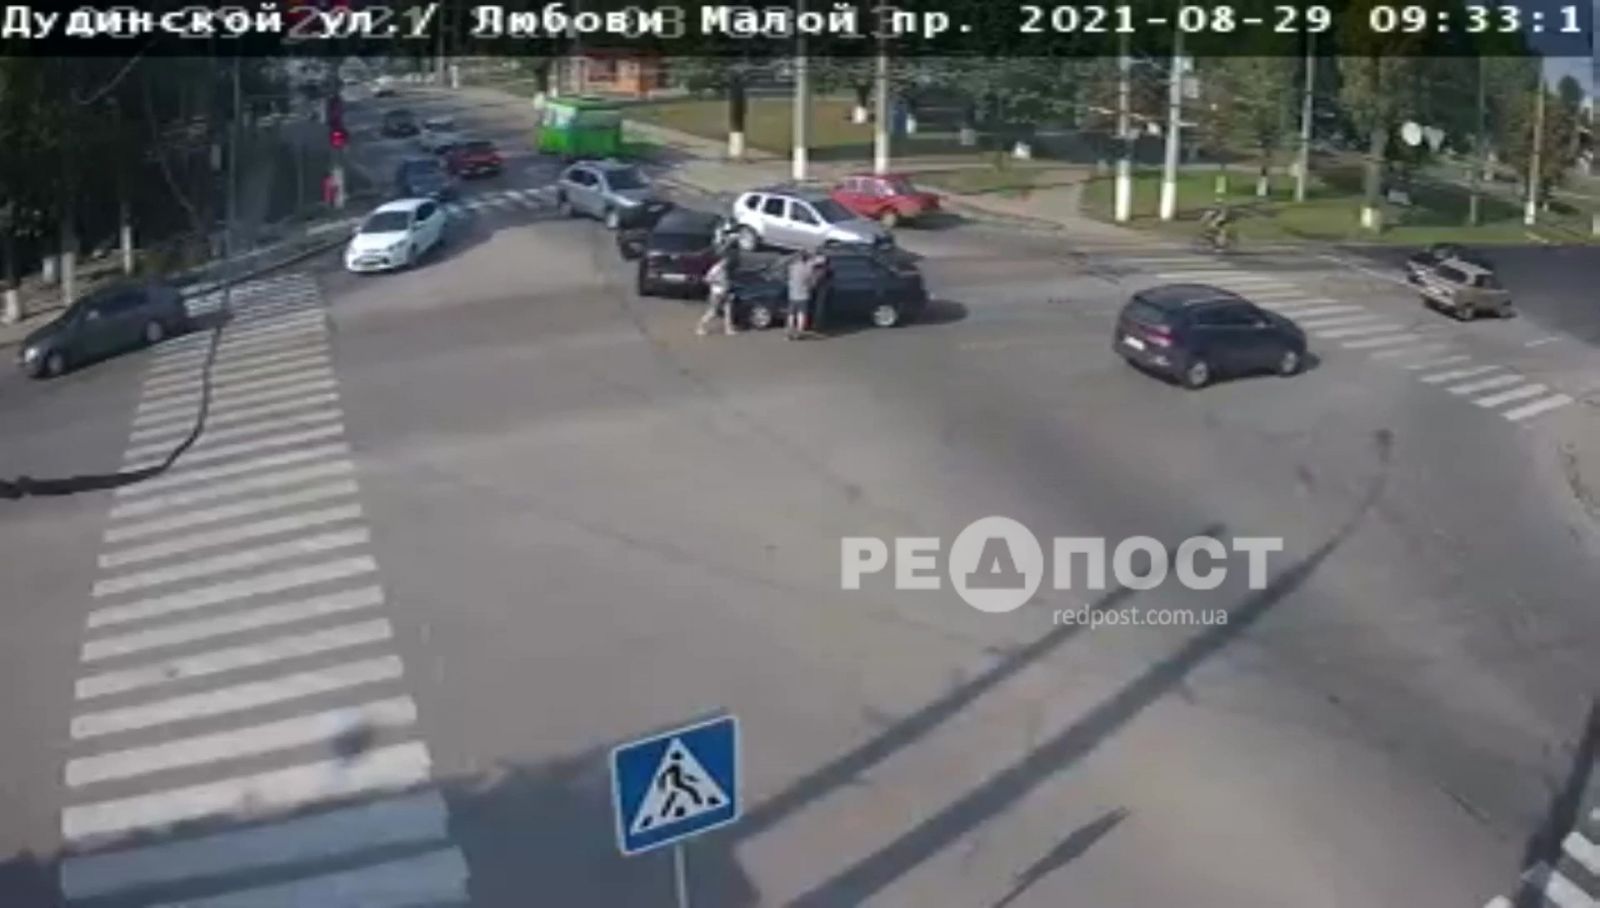 ДТП Харьков: на перекрестке столкнулись ВАЗ-2110 и BMW I3